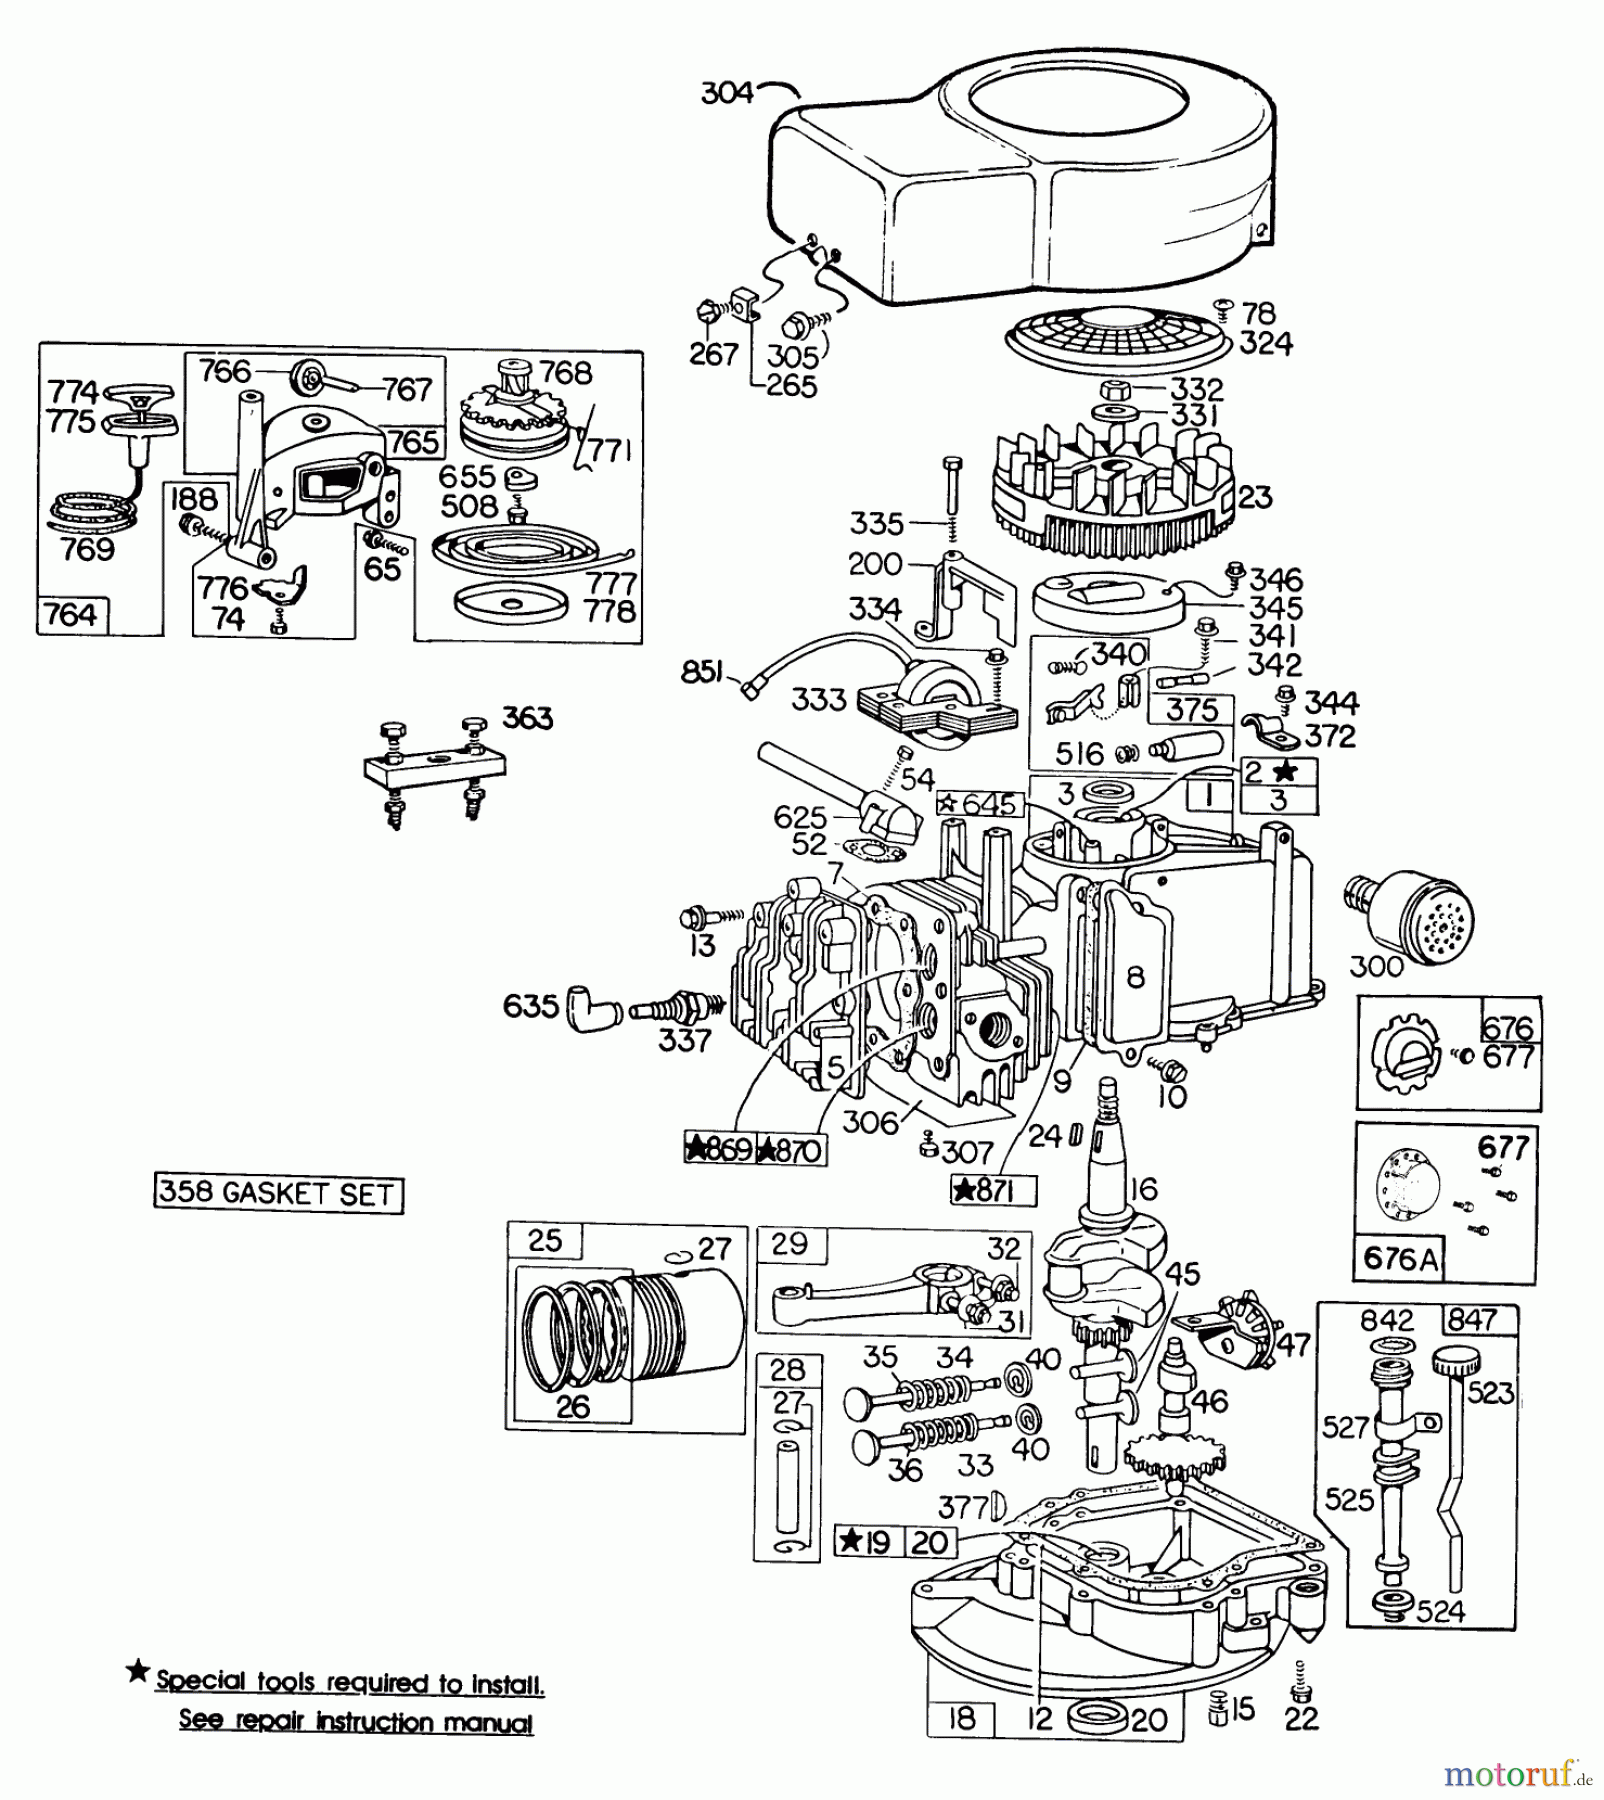  Toro Neu Mowers, Walk-Behind Seite 2 23400 - Toro Lawnmower, 1982 (2000001-2999999) ENGINE BRIGGS & STRATTON MODEL 110908-0492-01 #2